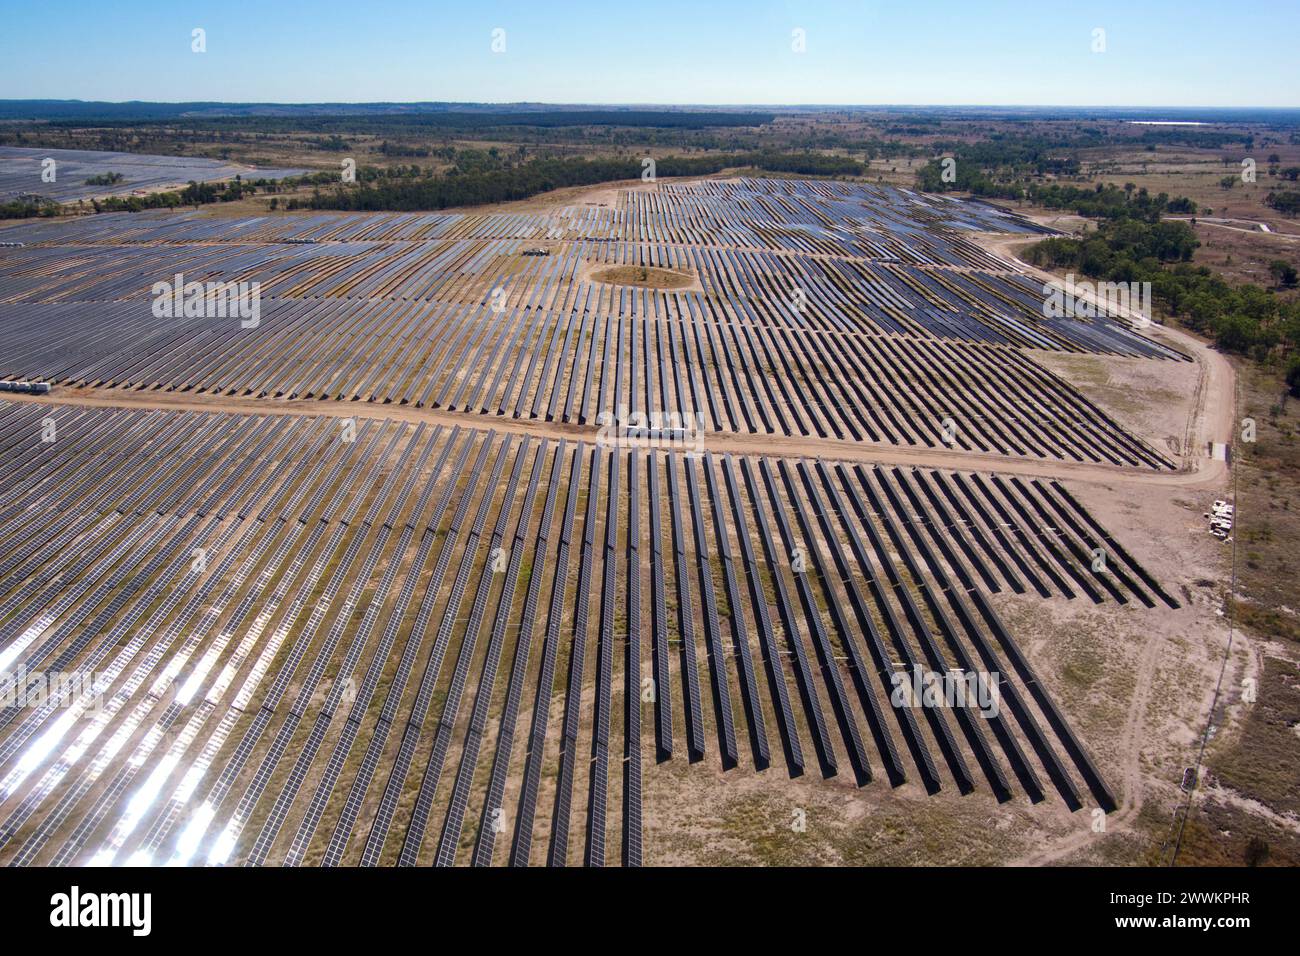 Antenne de ferme solaire couvrant plus de 500 hectares à Wandoan South Queensland Australie Banque D'Images